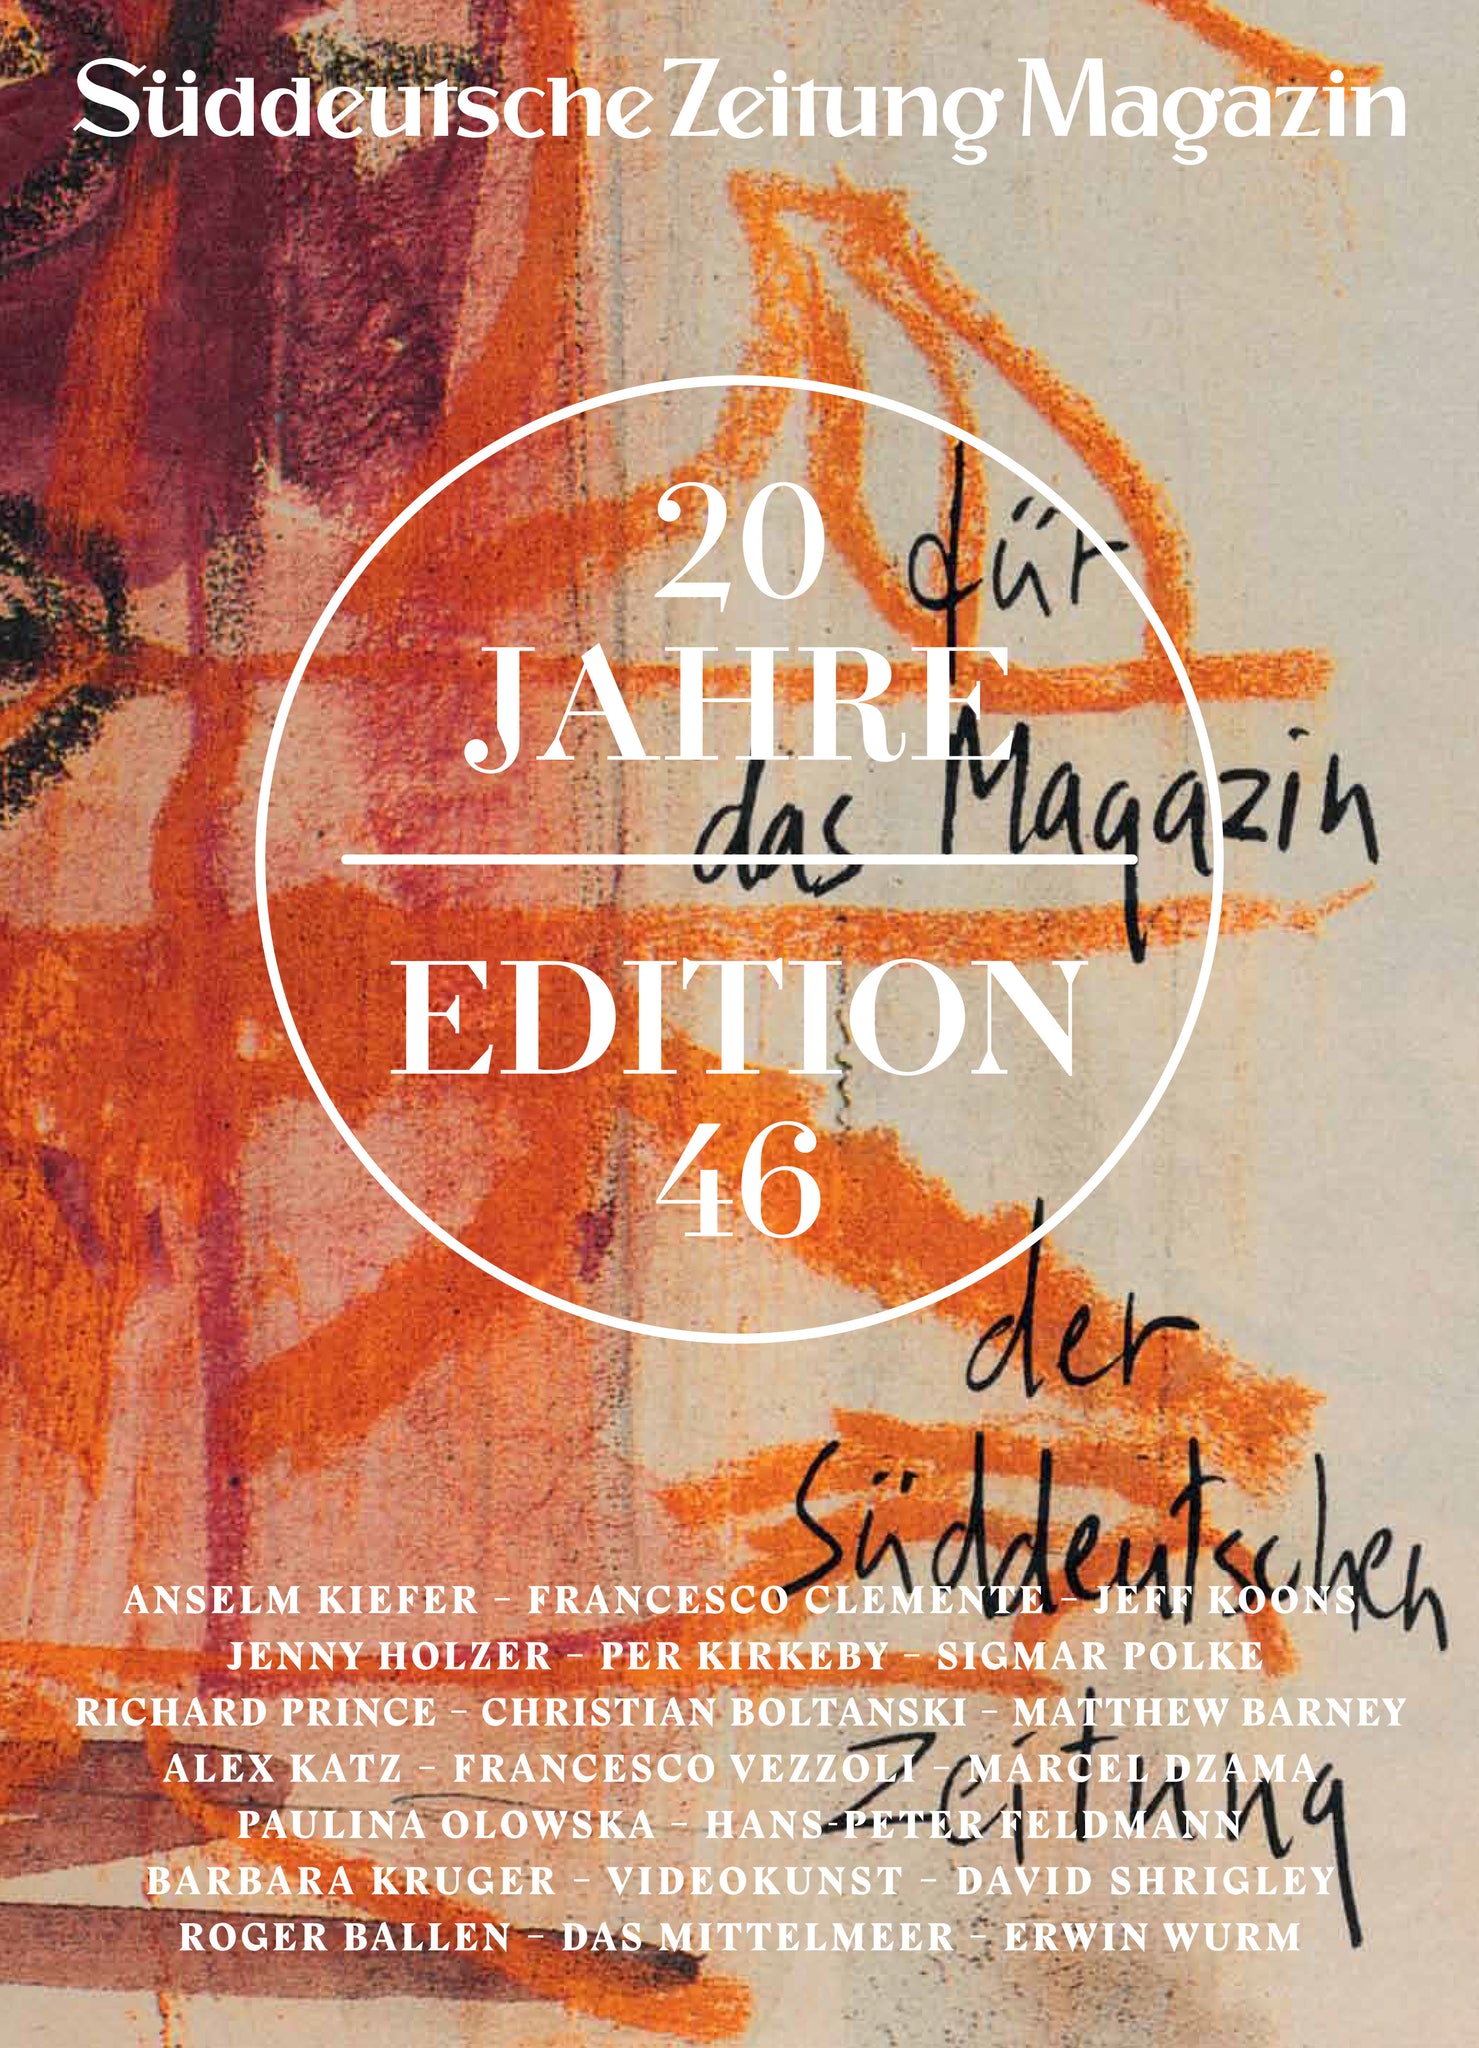 Süddeutsche Zeitung Magazin Sonderausgabe 20 Jahre Edition 46 - Bild 1